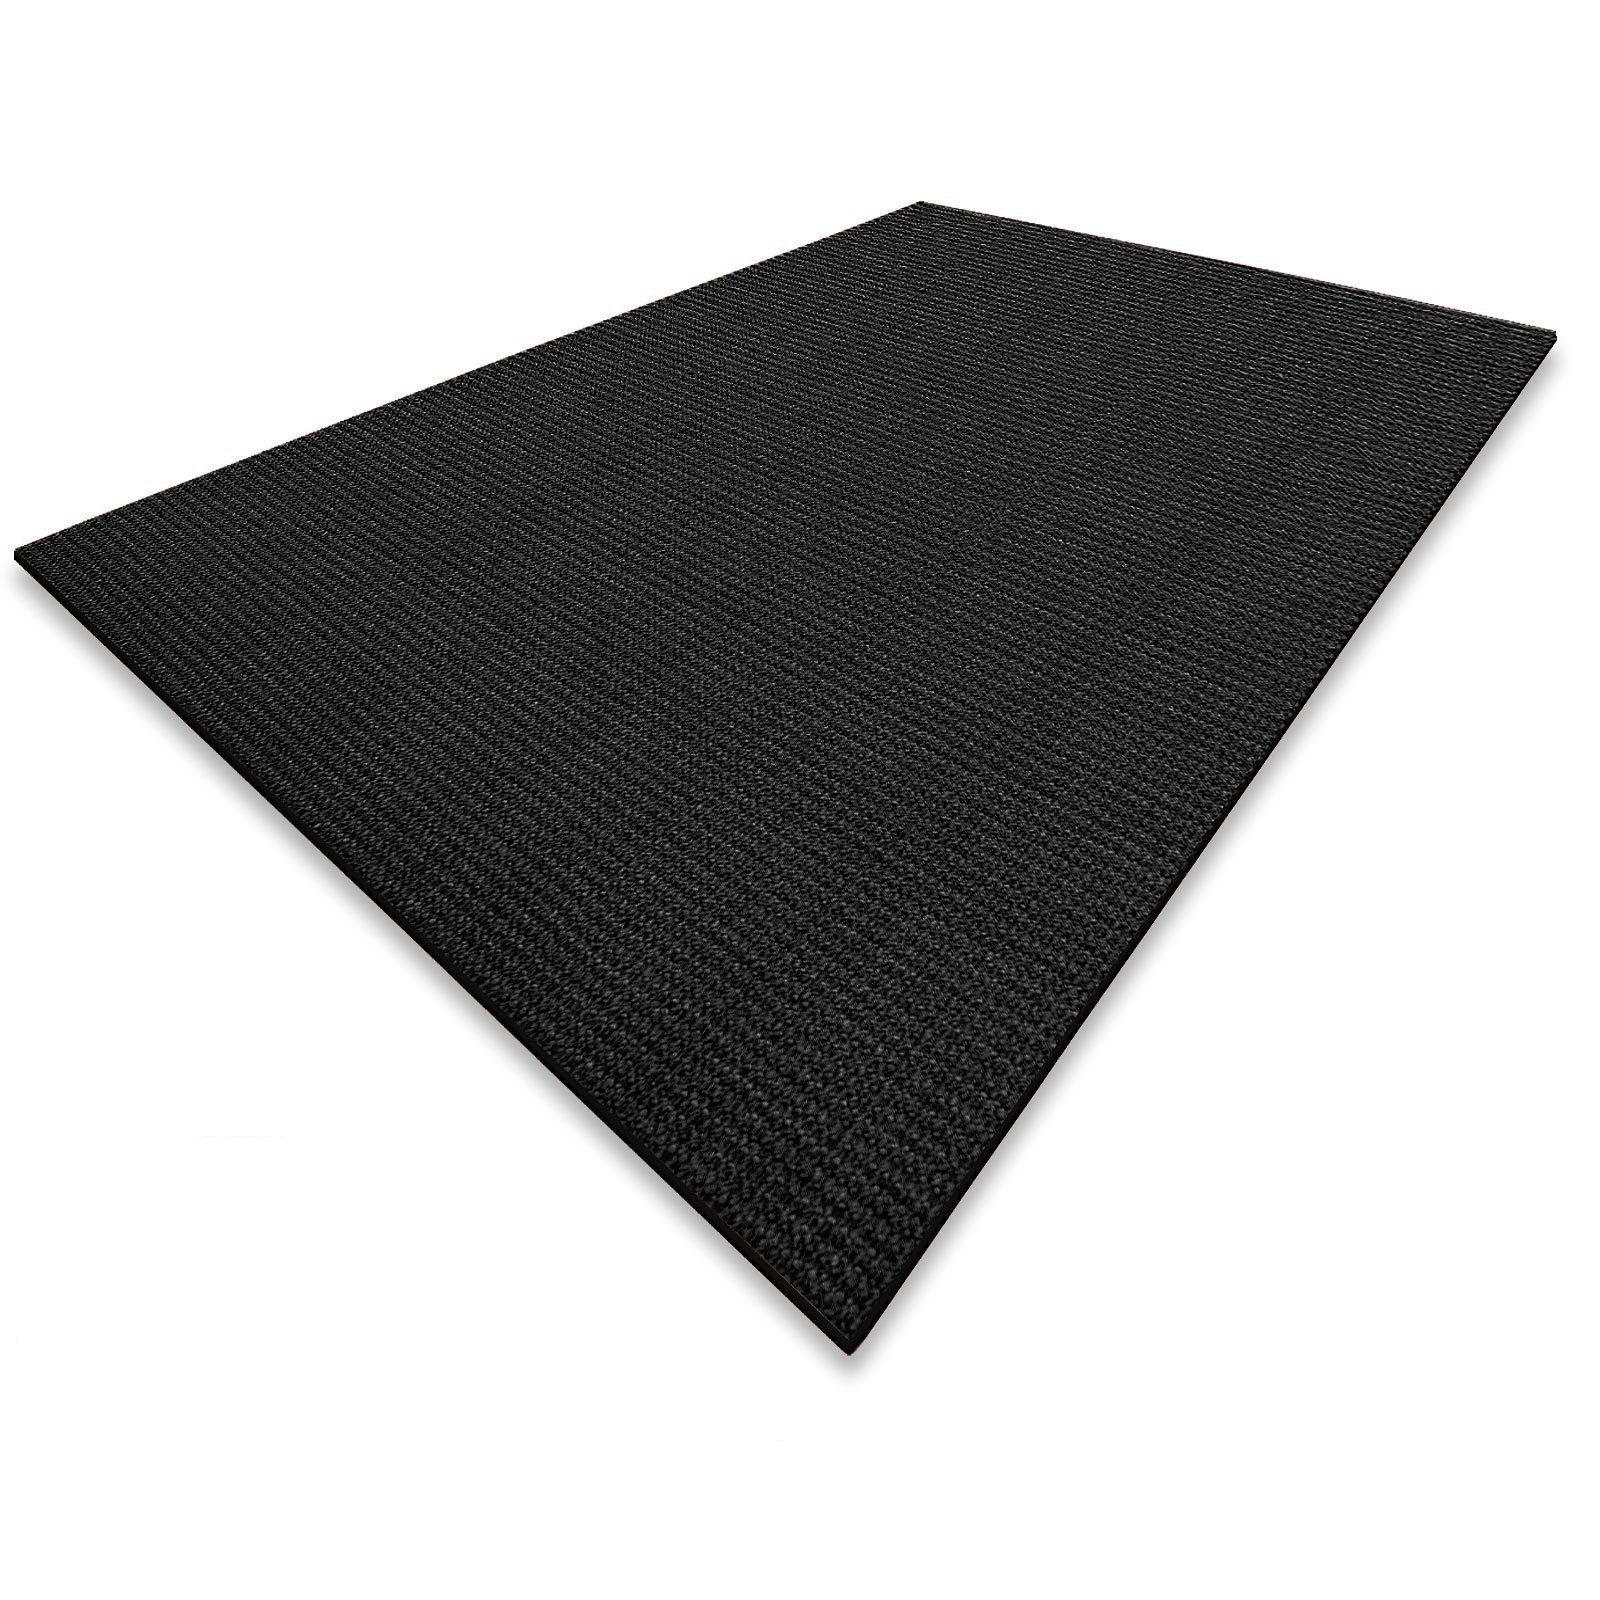 Sisalteppich Sylt Schwarz, Teppich erhältlich in 10 Größen, Teppichläufer, Floordirekt, Eckig, Höhe: 6 mm, Eckig